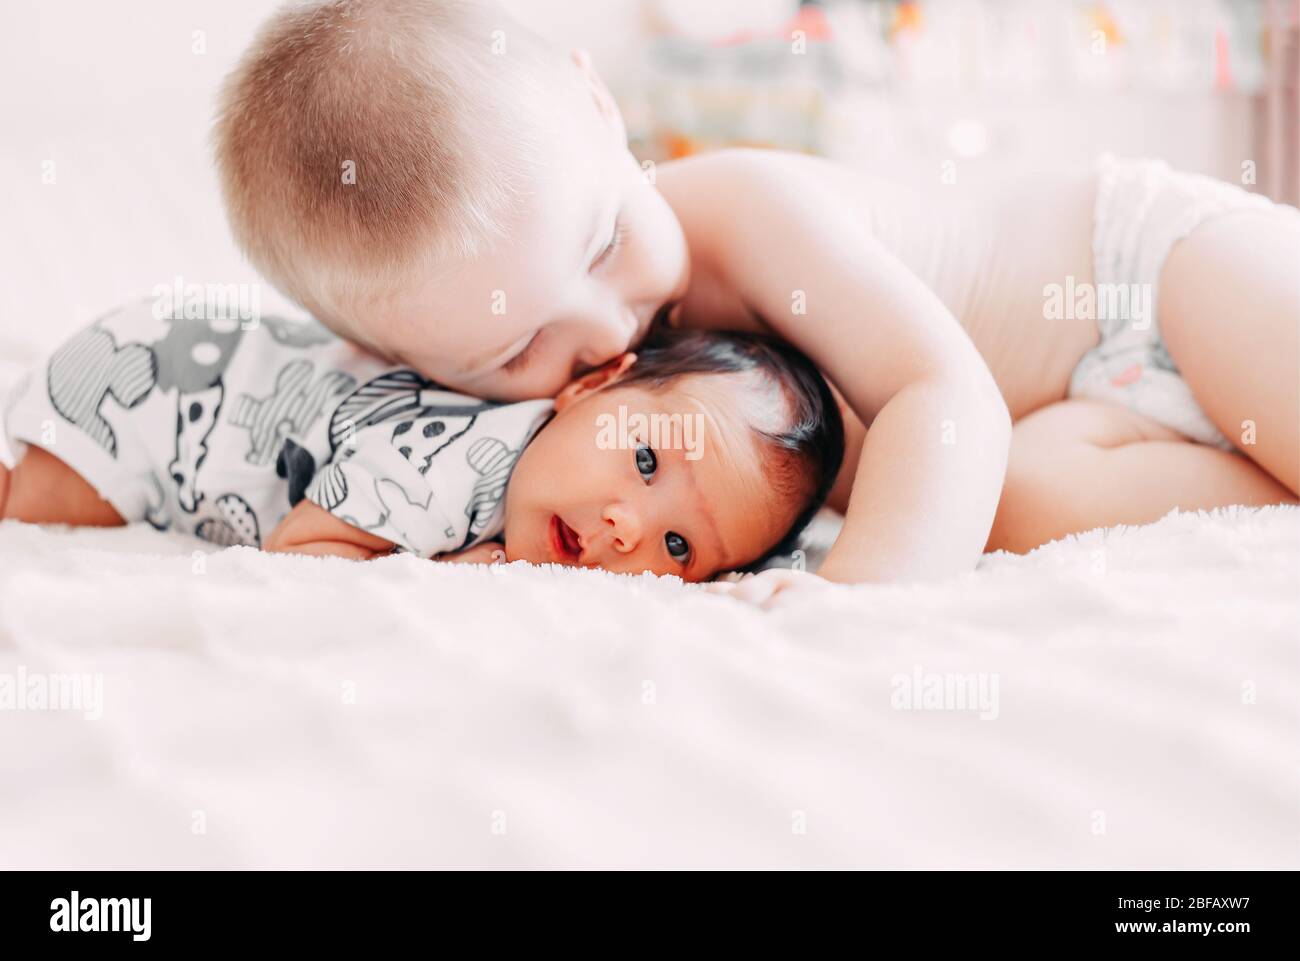 Ältere Bruder blonde Haare Kuss Baby Schwester liegen auf dem Bett zu Hause Liebe Familie Konzept Stockfoto